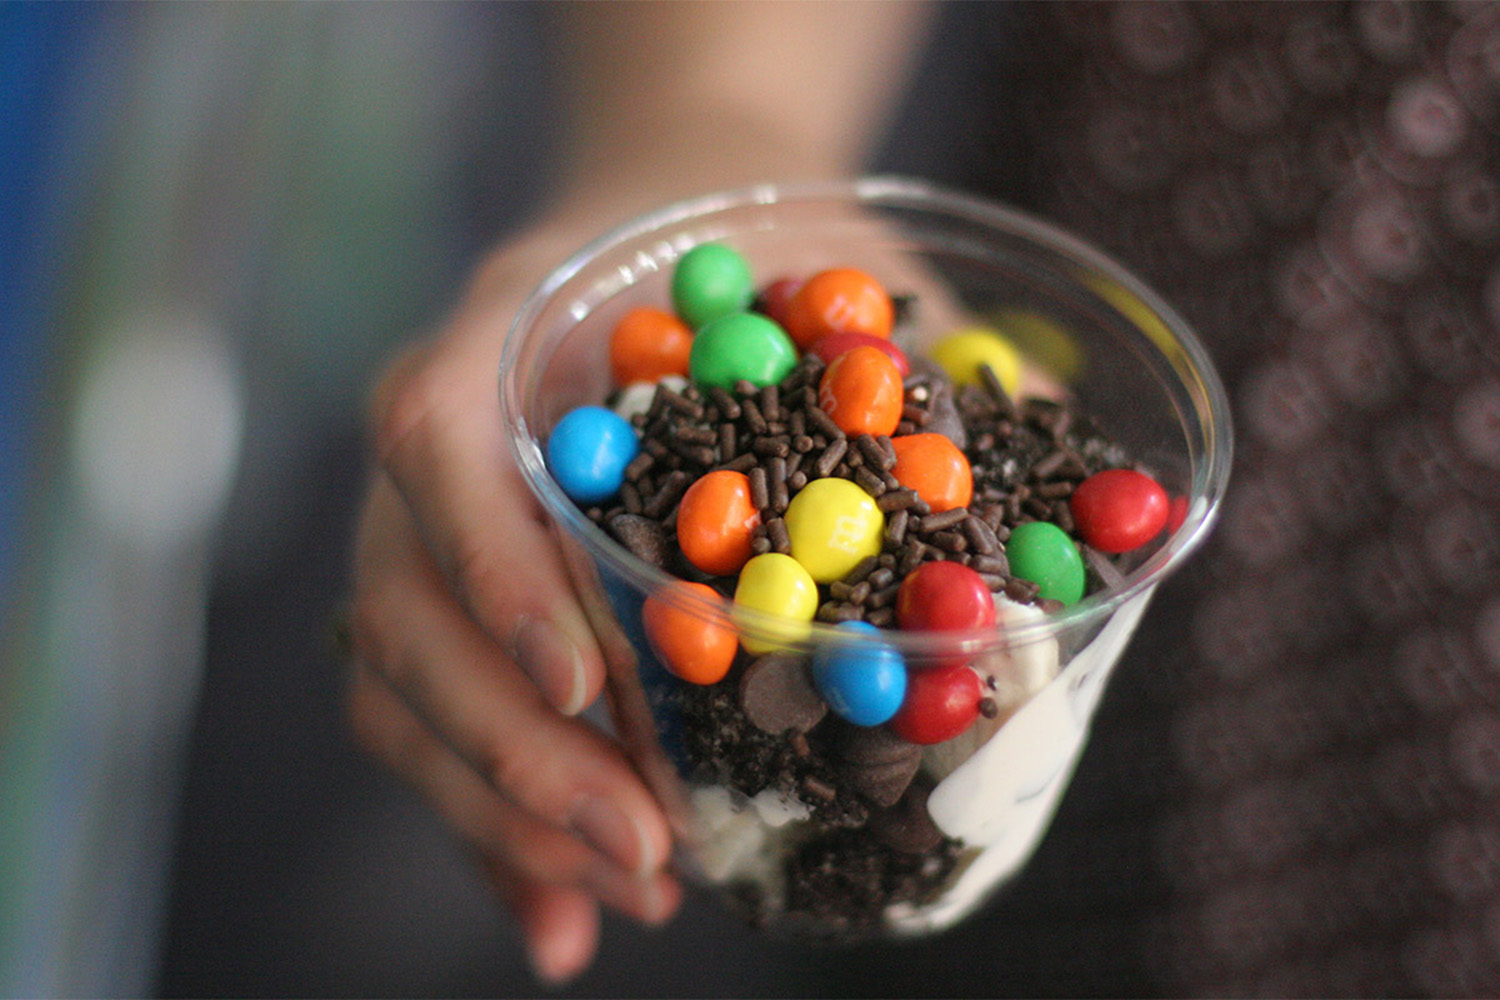 ice cream sundae in a plastic cup 